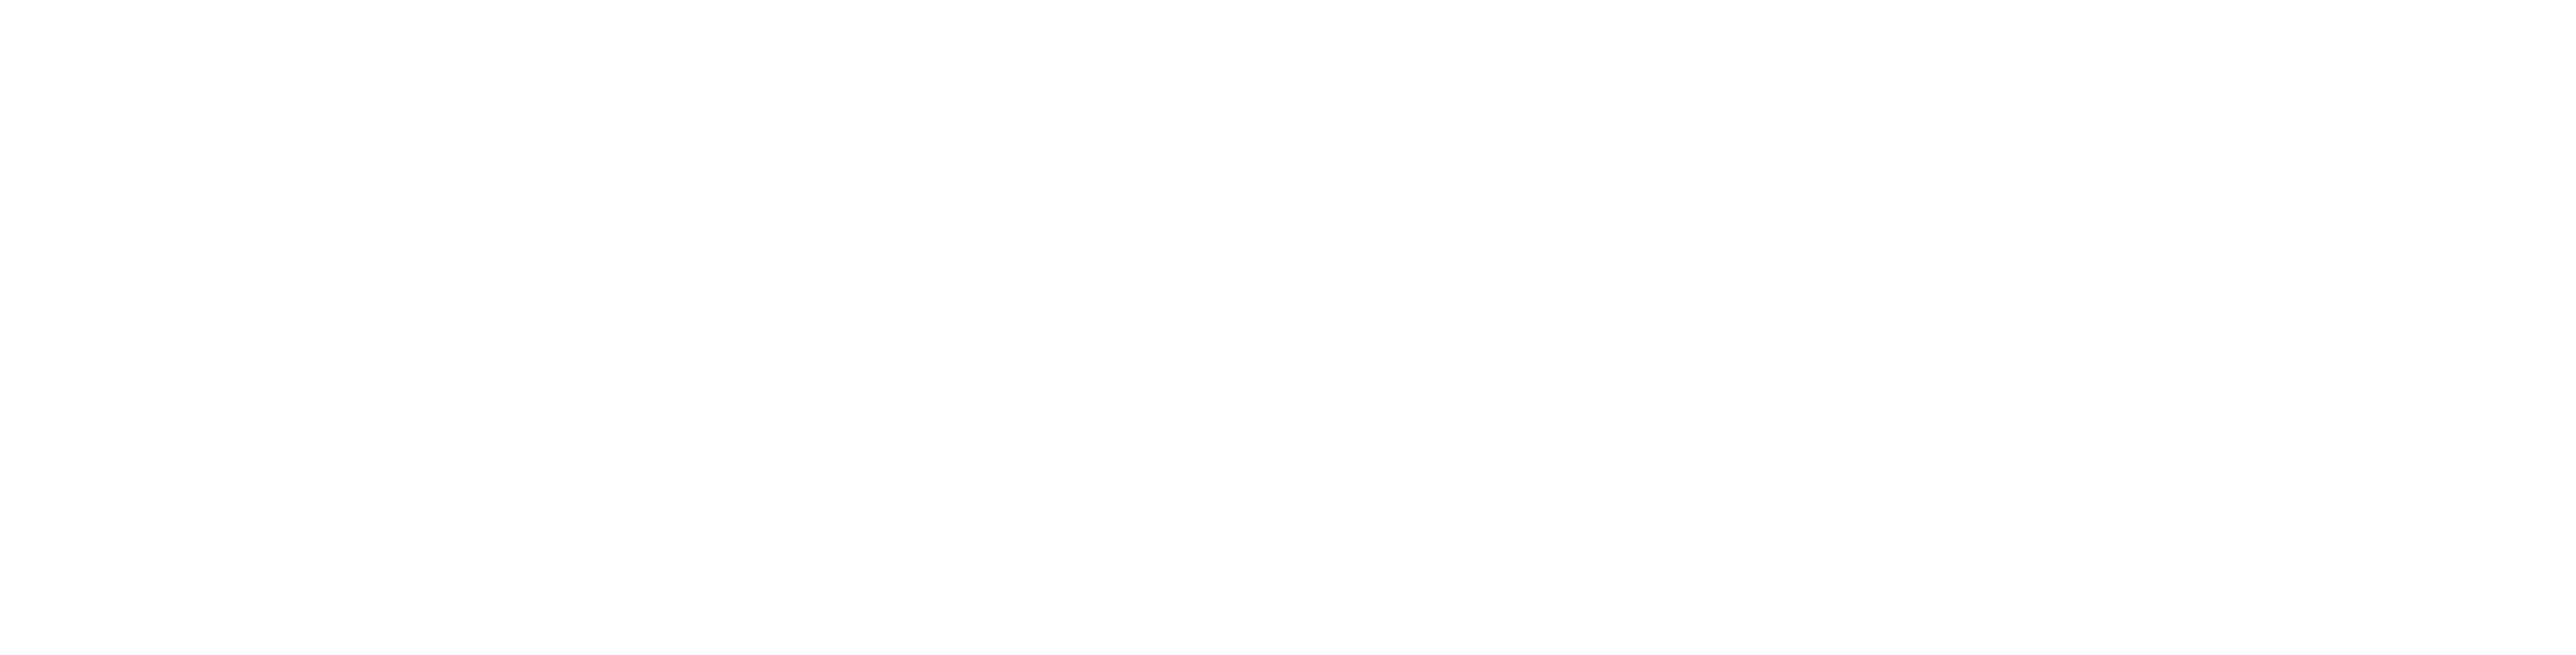 To Kill a Mockingbird logo